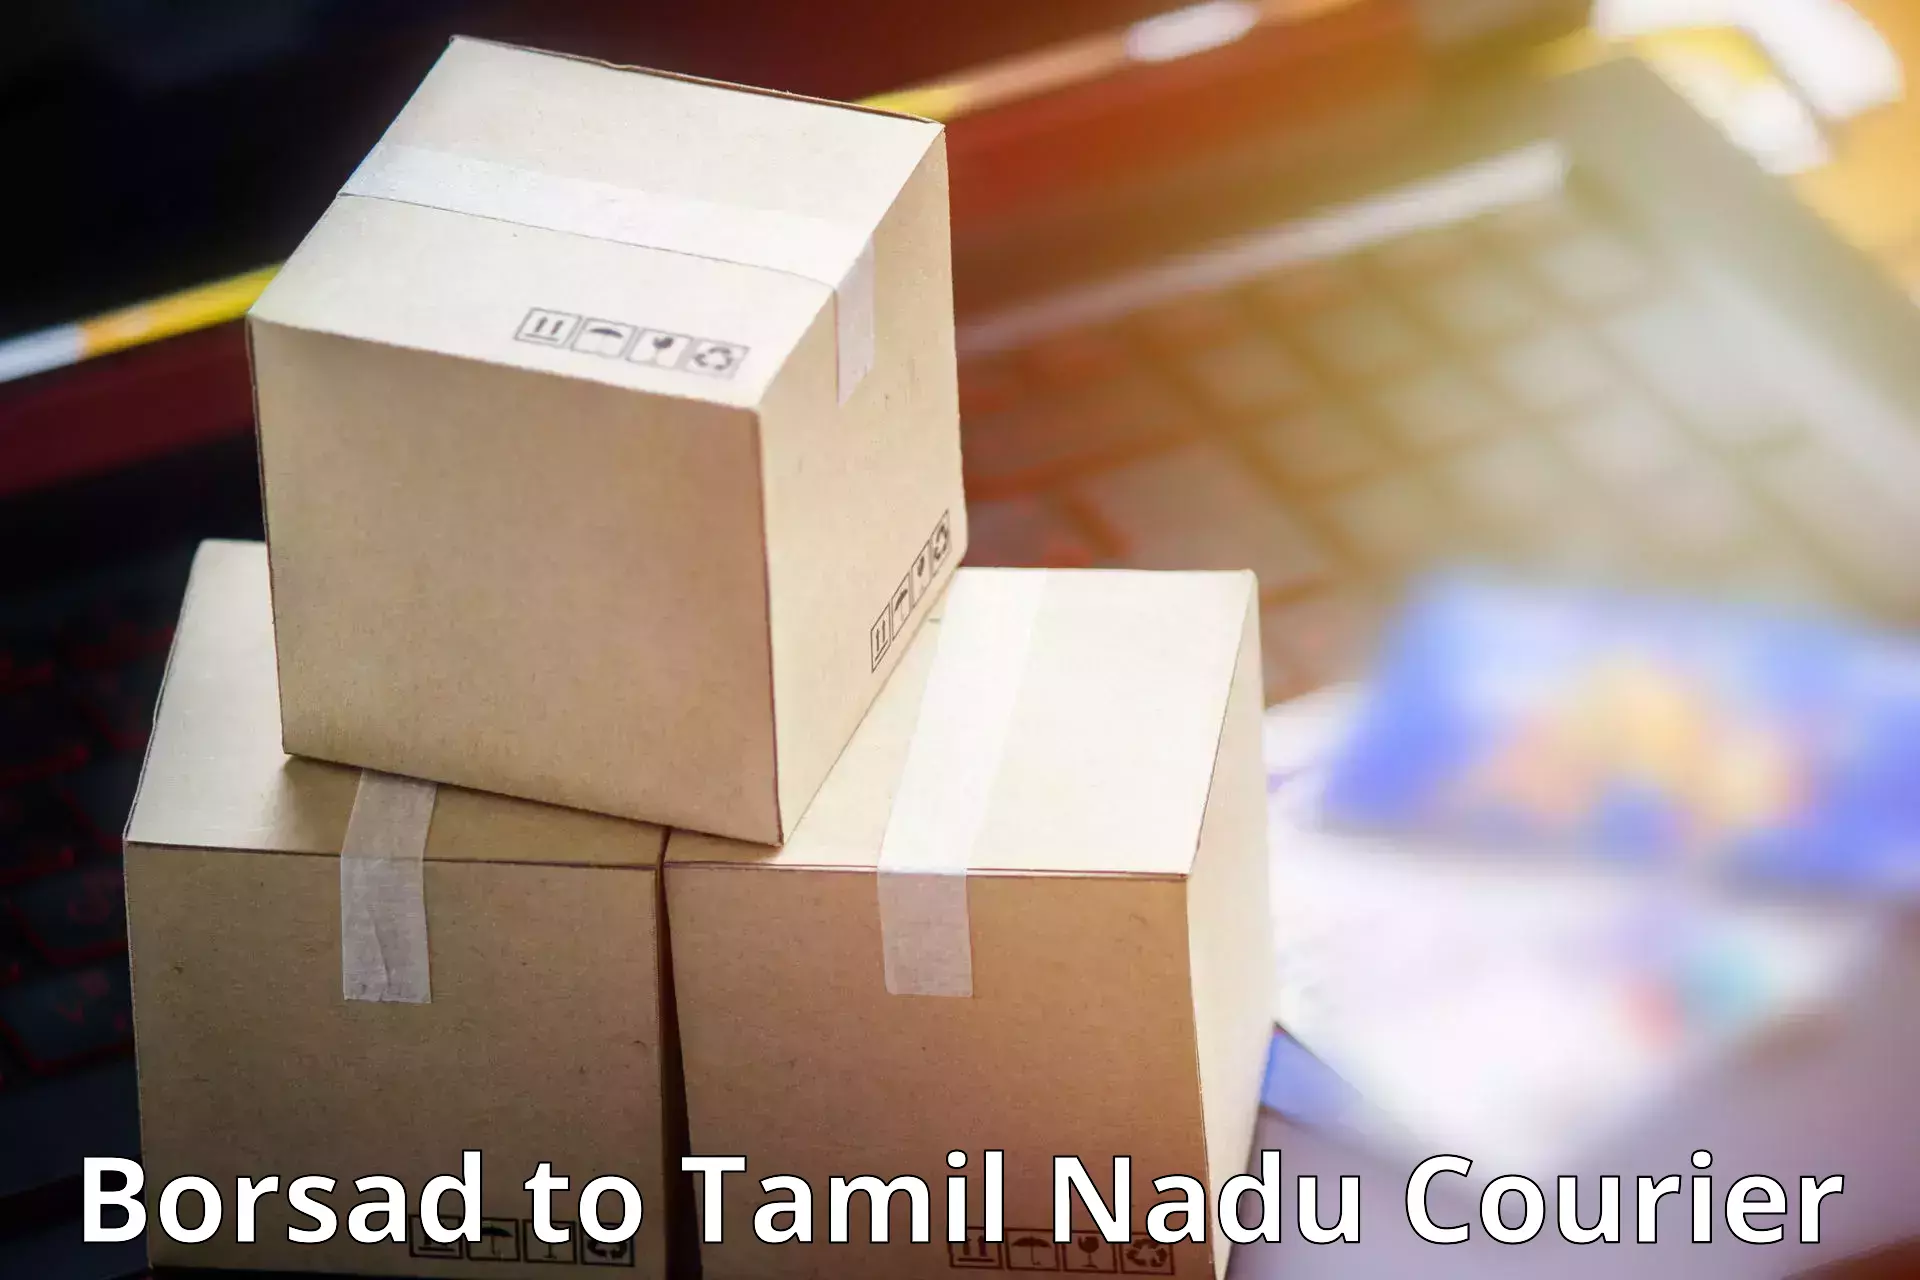 Cargo delivery service Borsad to Tamil Nadu